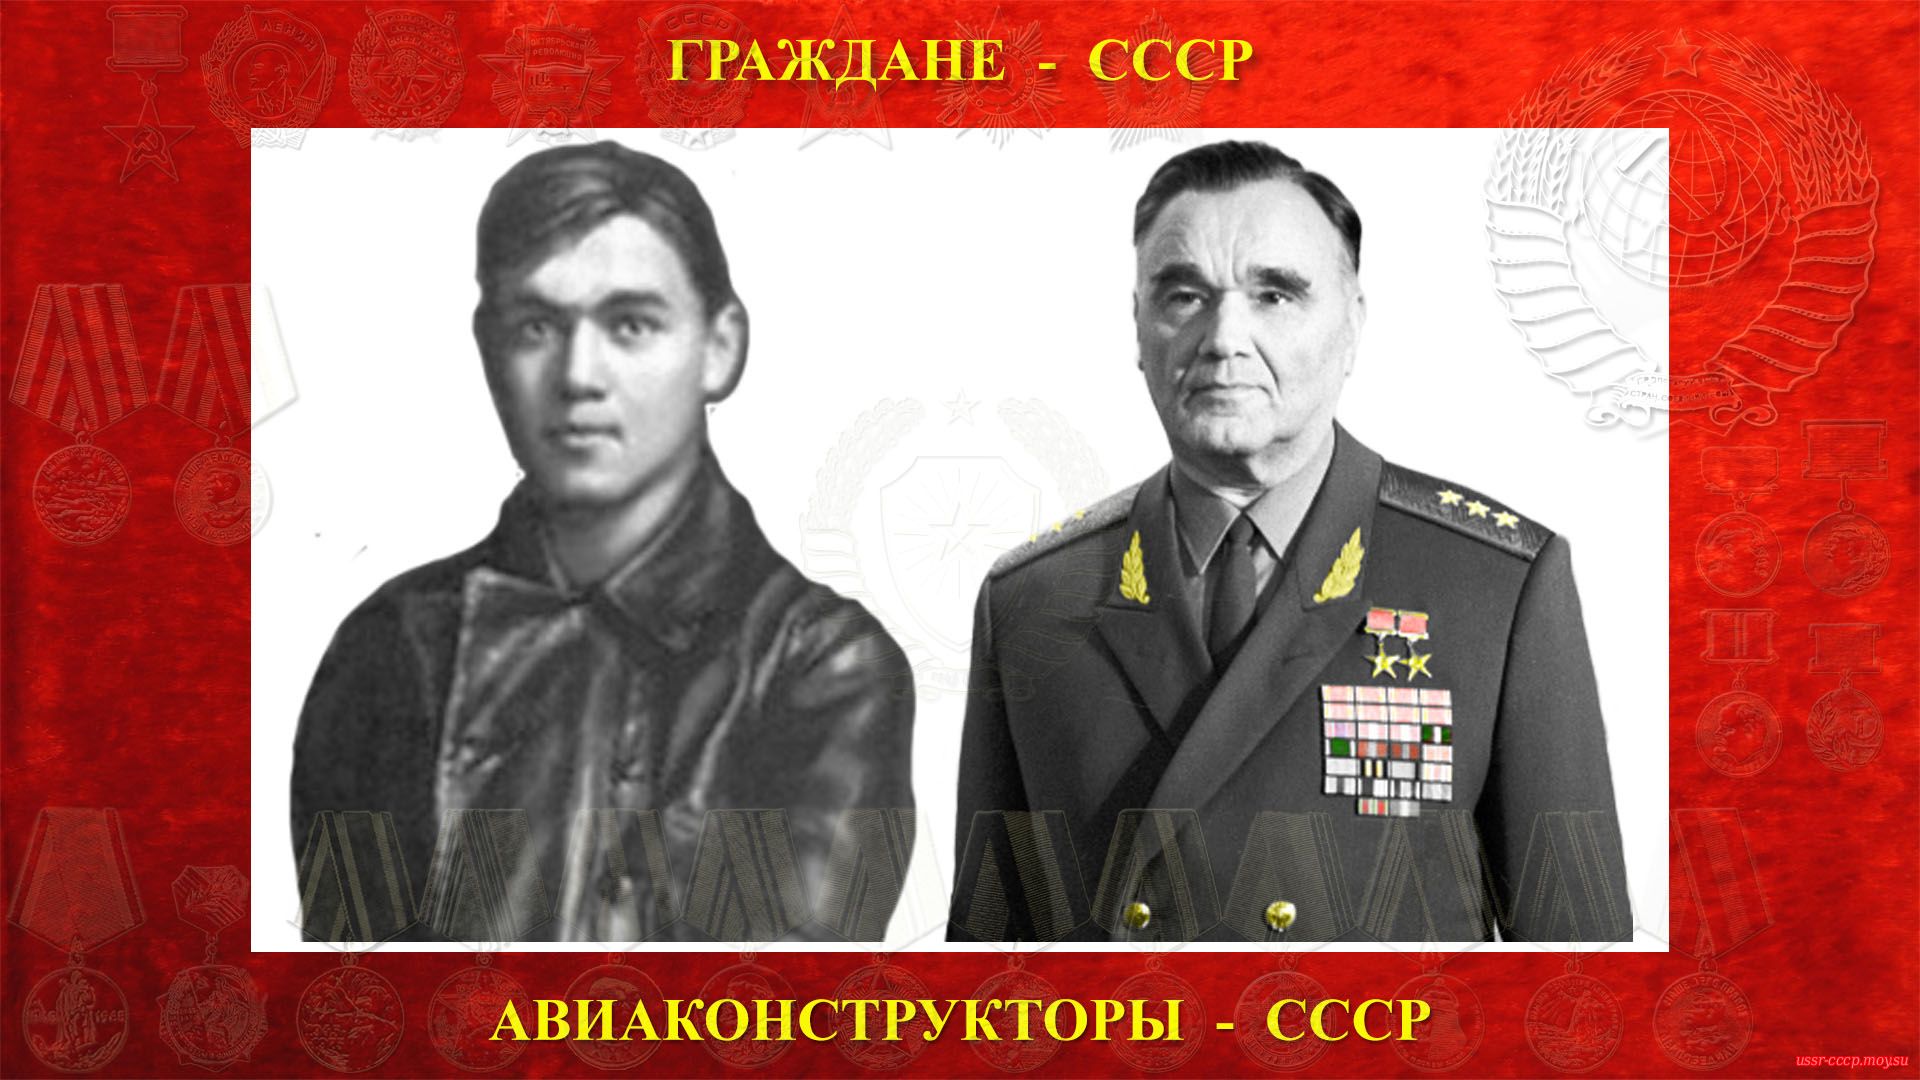 Яковлев А.С. (биография)